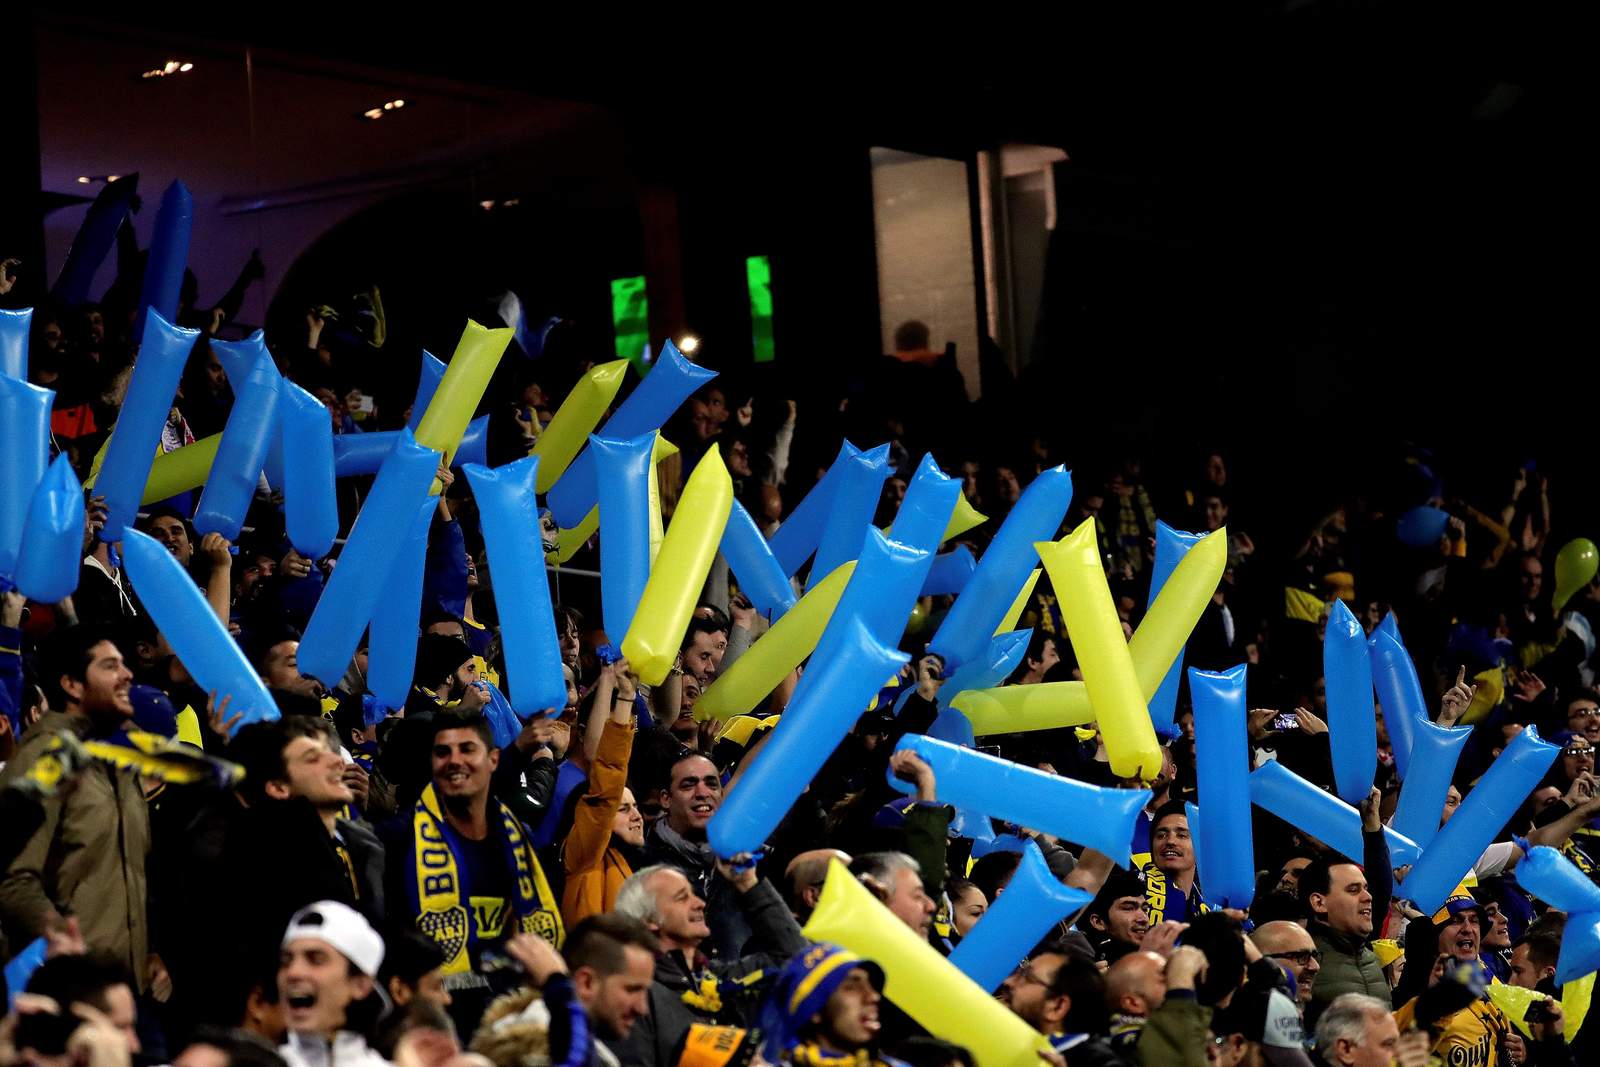 En la zona de aficionados de Boca, los hinchas lanzaron confeti del color azul y amarillo de su equipo.